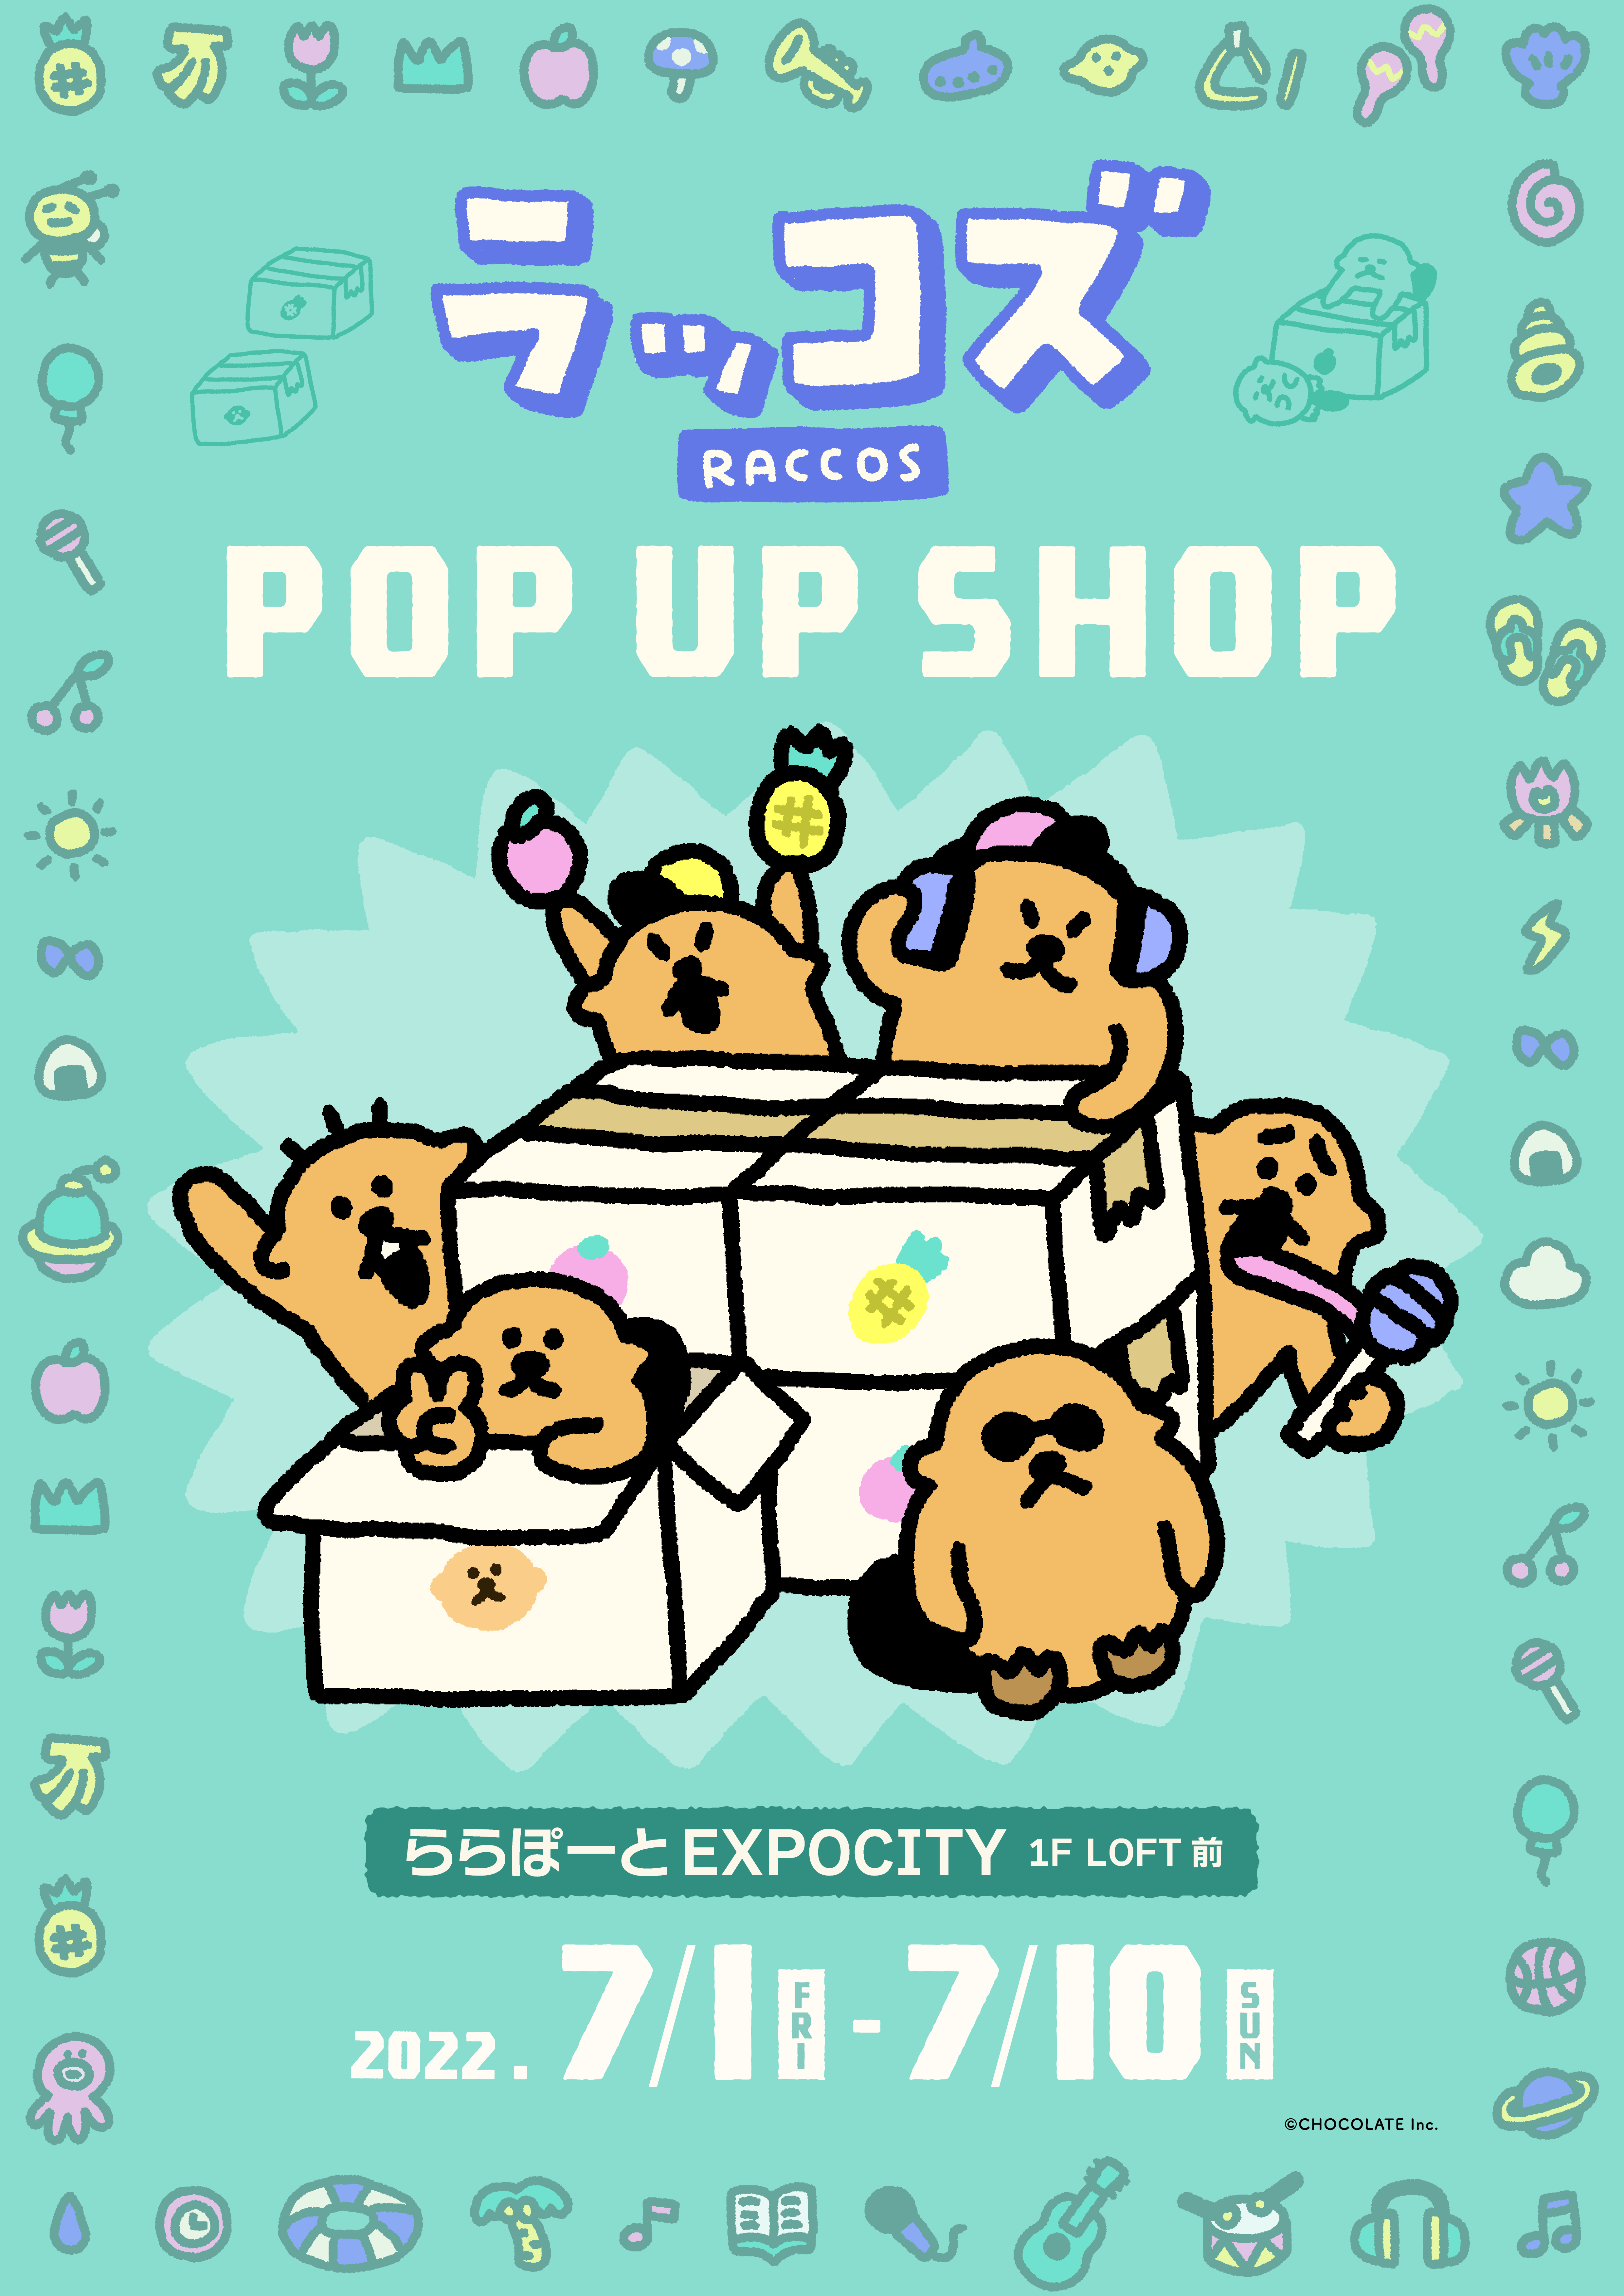 ラッコズ POP UP SHOP ららぽーとEXPOCITY 7/3(日)